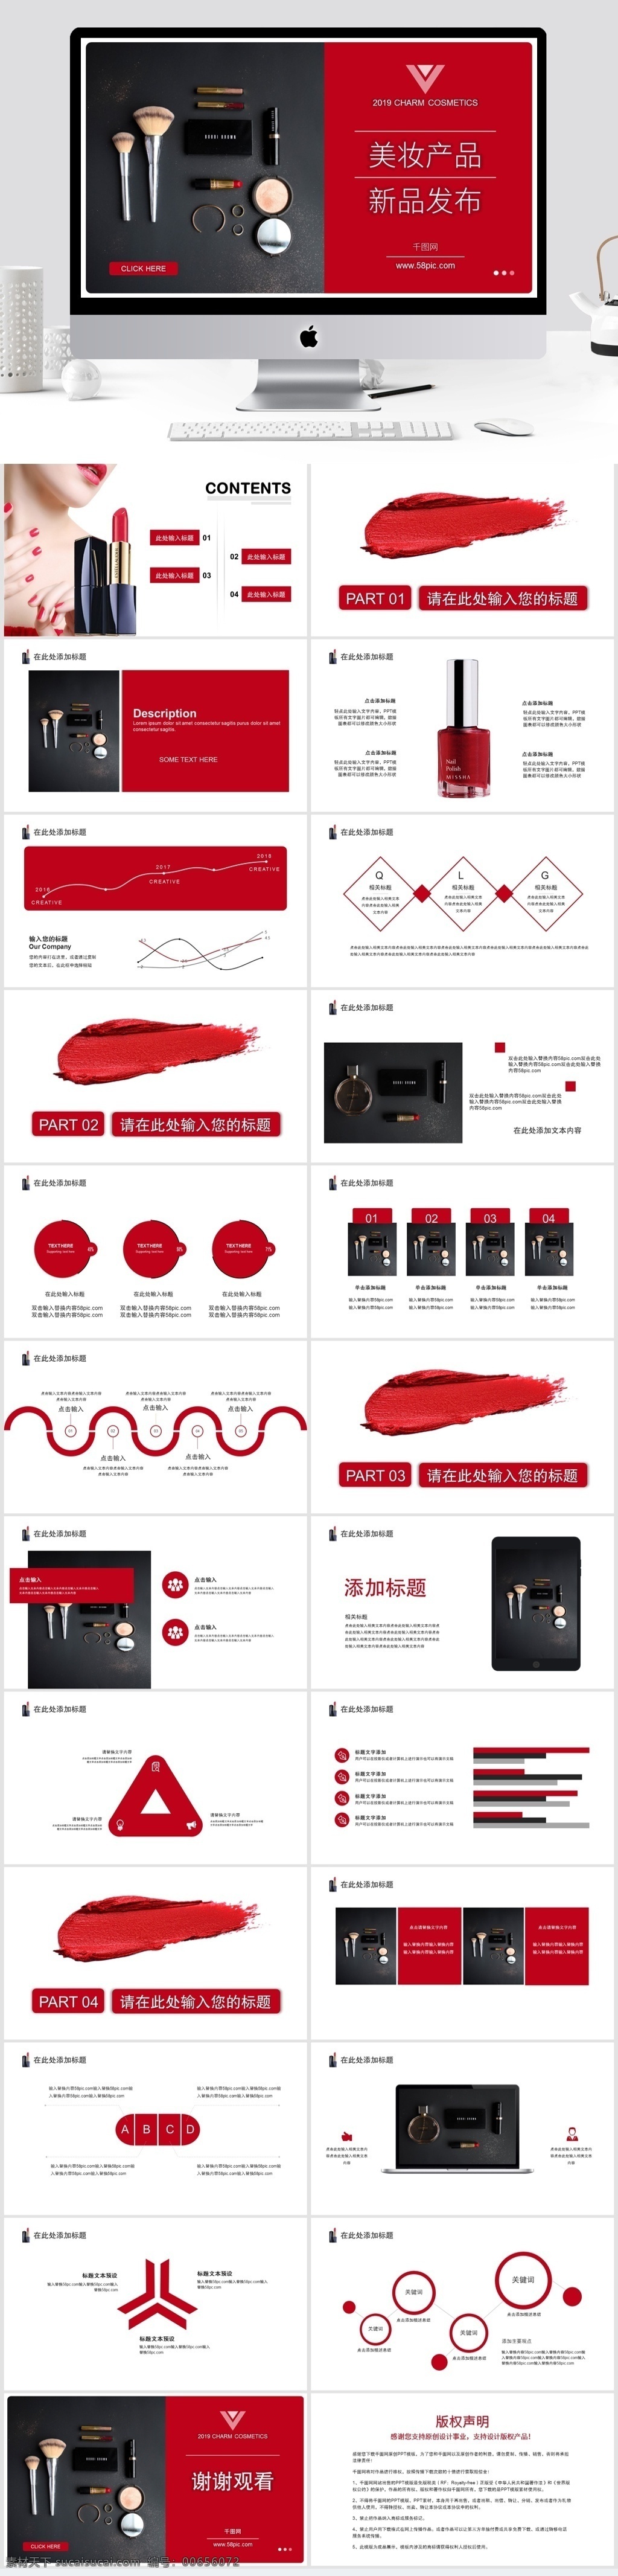 黑白 红 杂志 风 美 妆 新品 发布 模板 黑白红 杂志风 美妆产品 新品发布 ppt模板